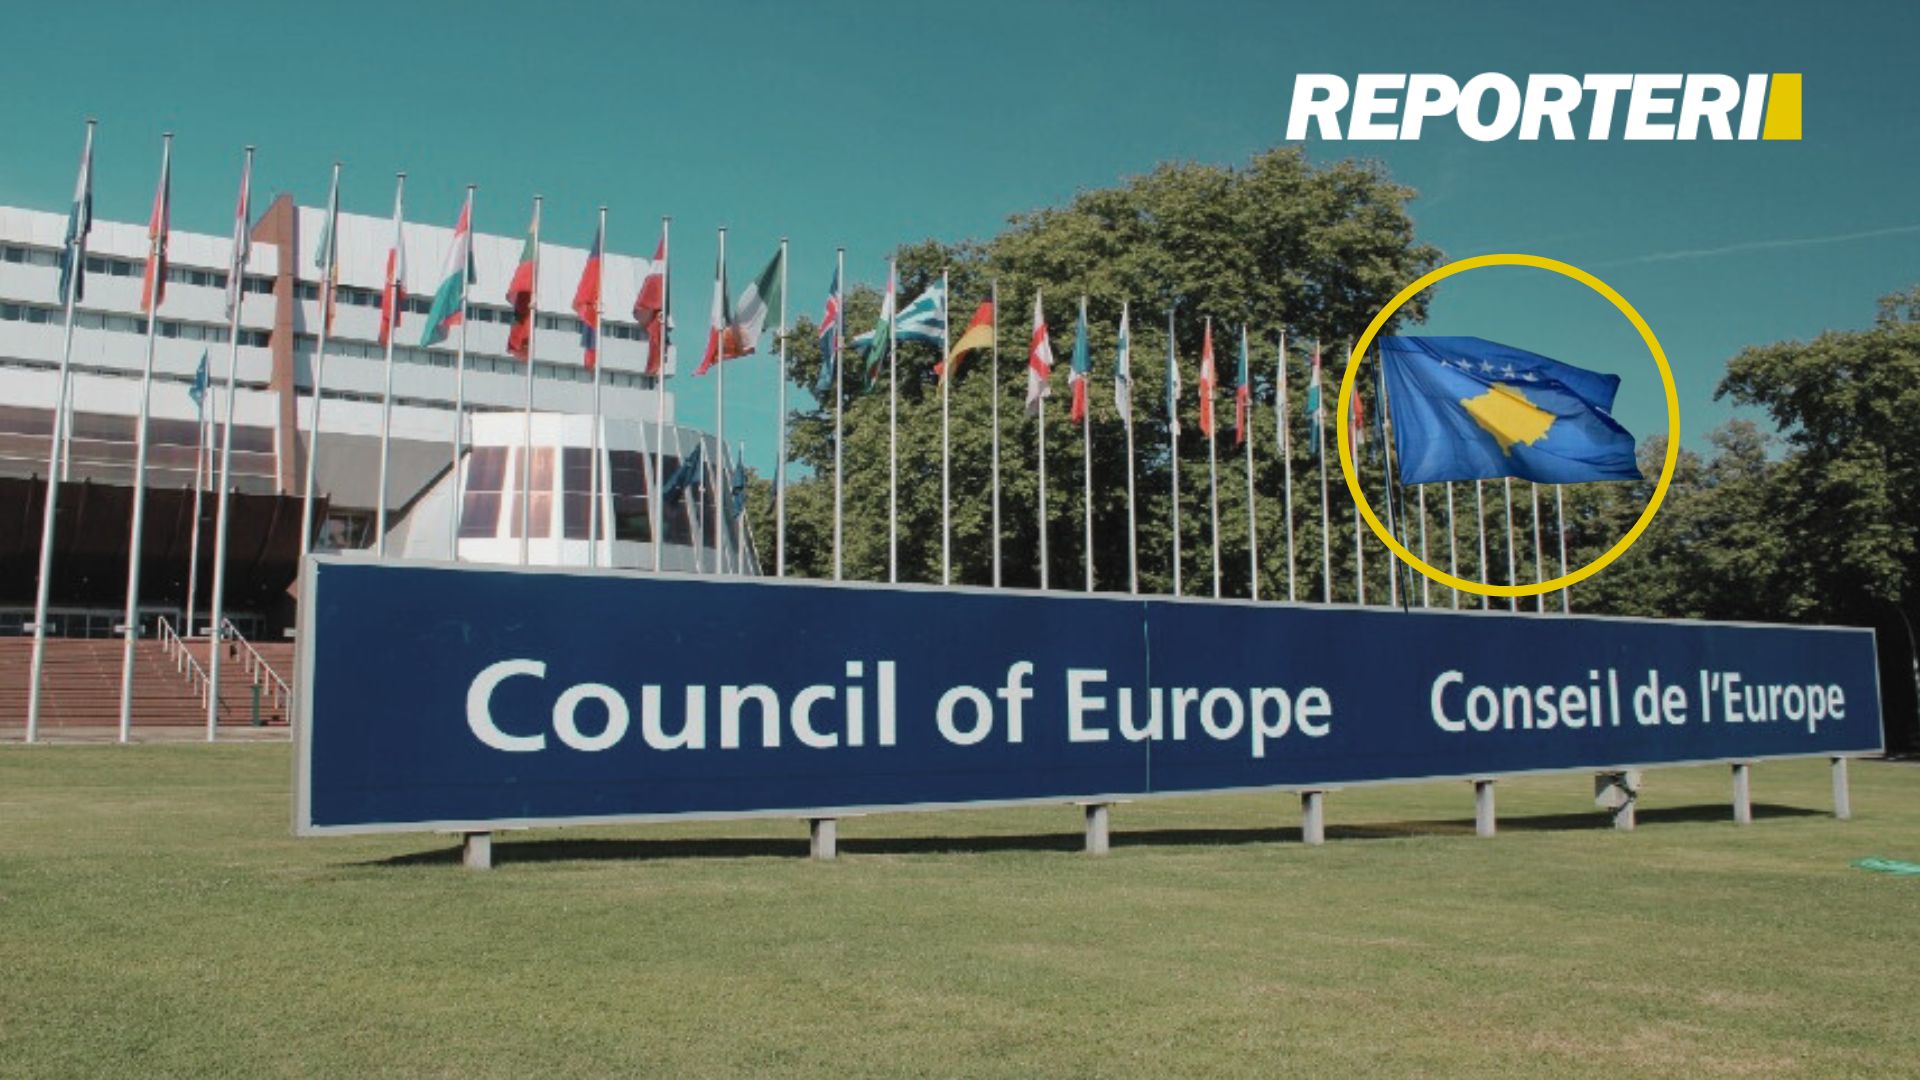 Këshilli i Evropës  Kosova ante portas 